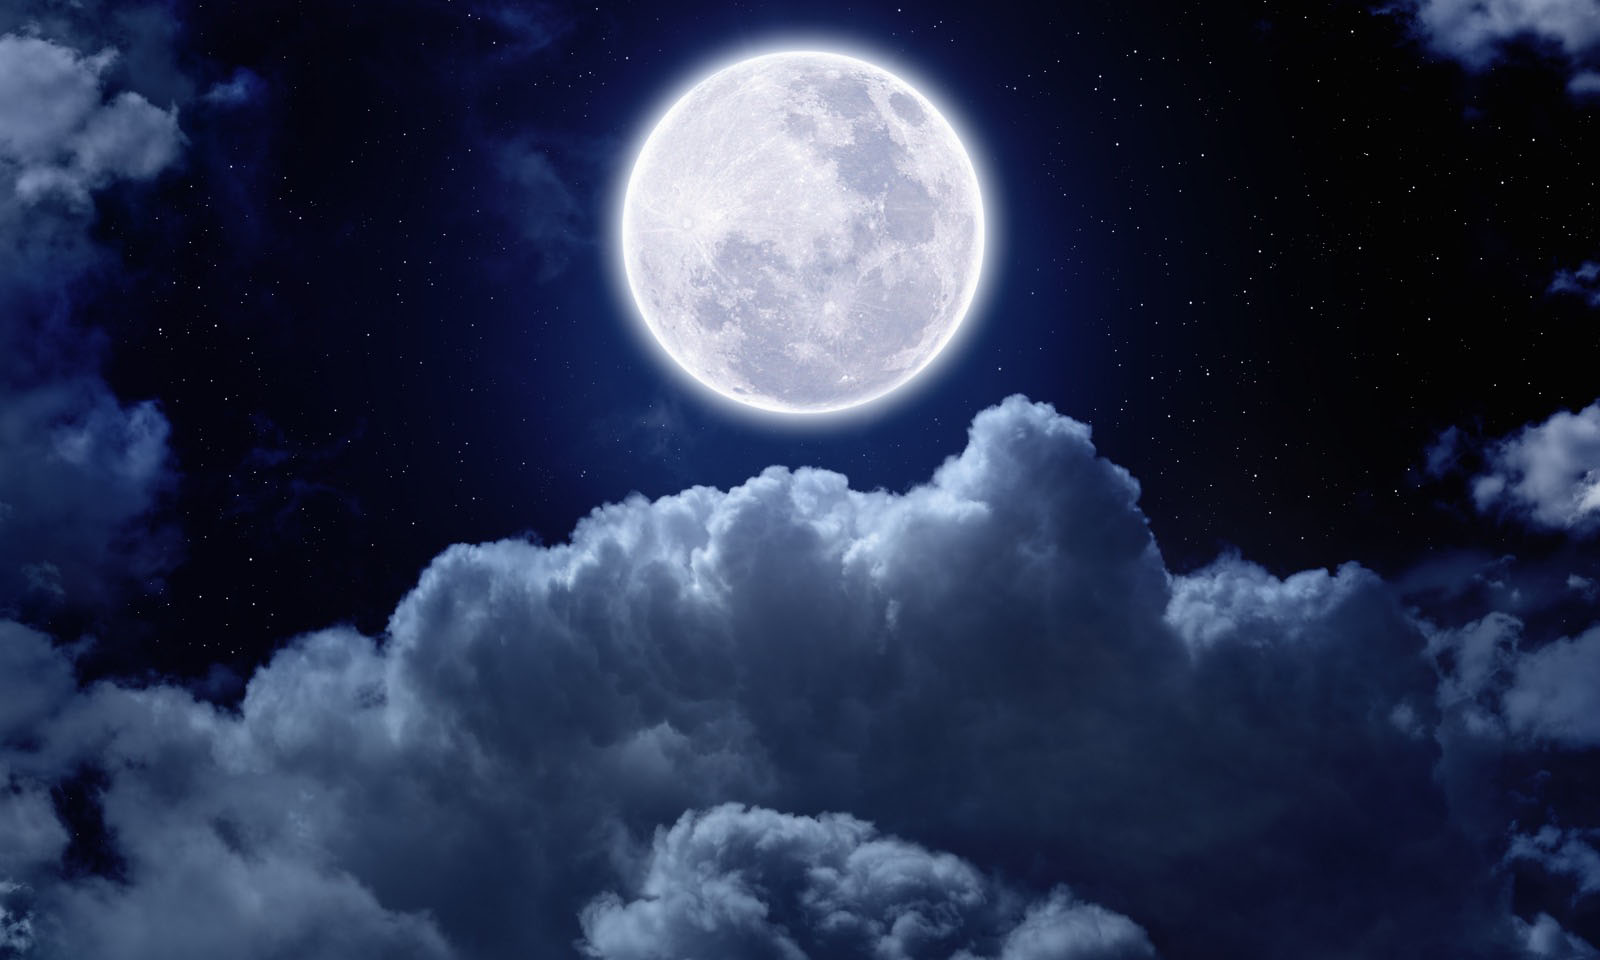 The September Full Moon Image